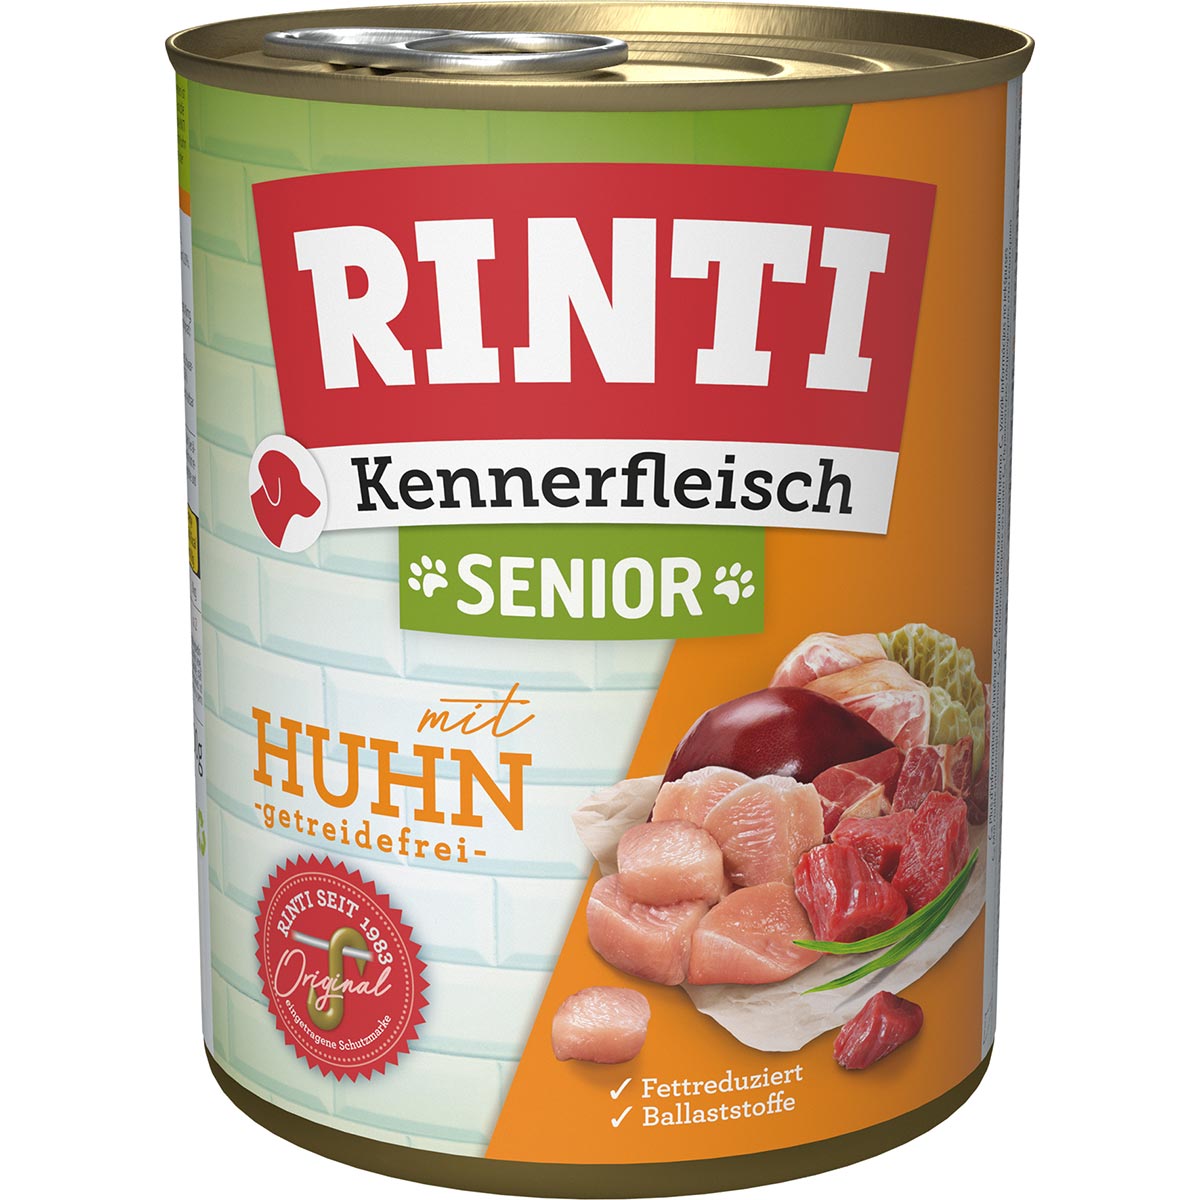 Rinti Kennerfleisch Senior Huhn 24x800g von Rinti